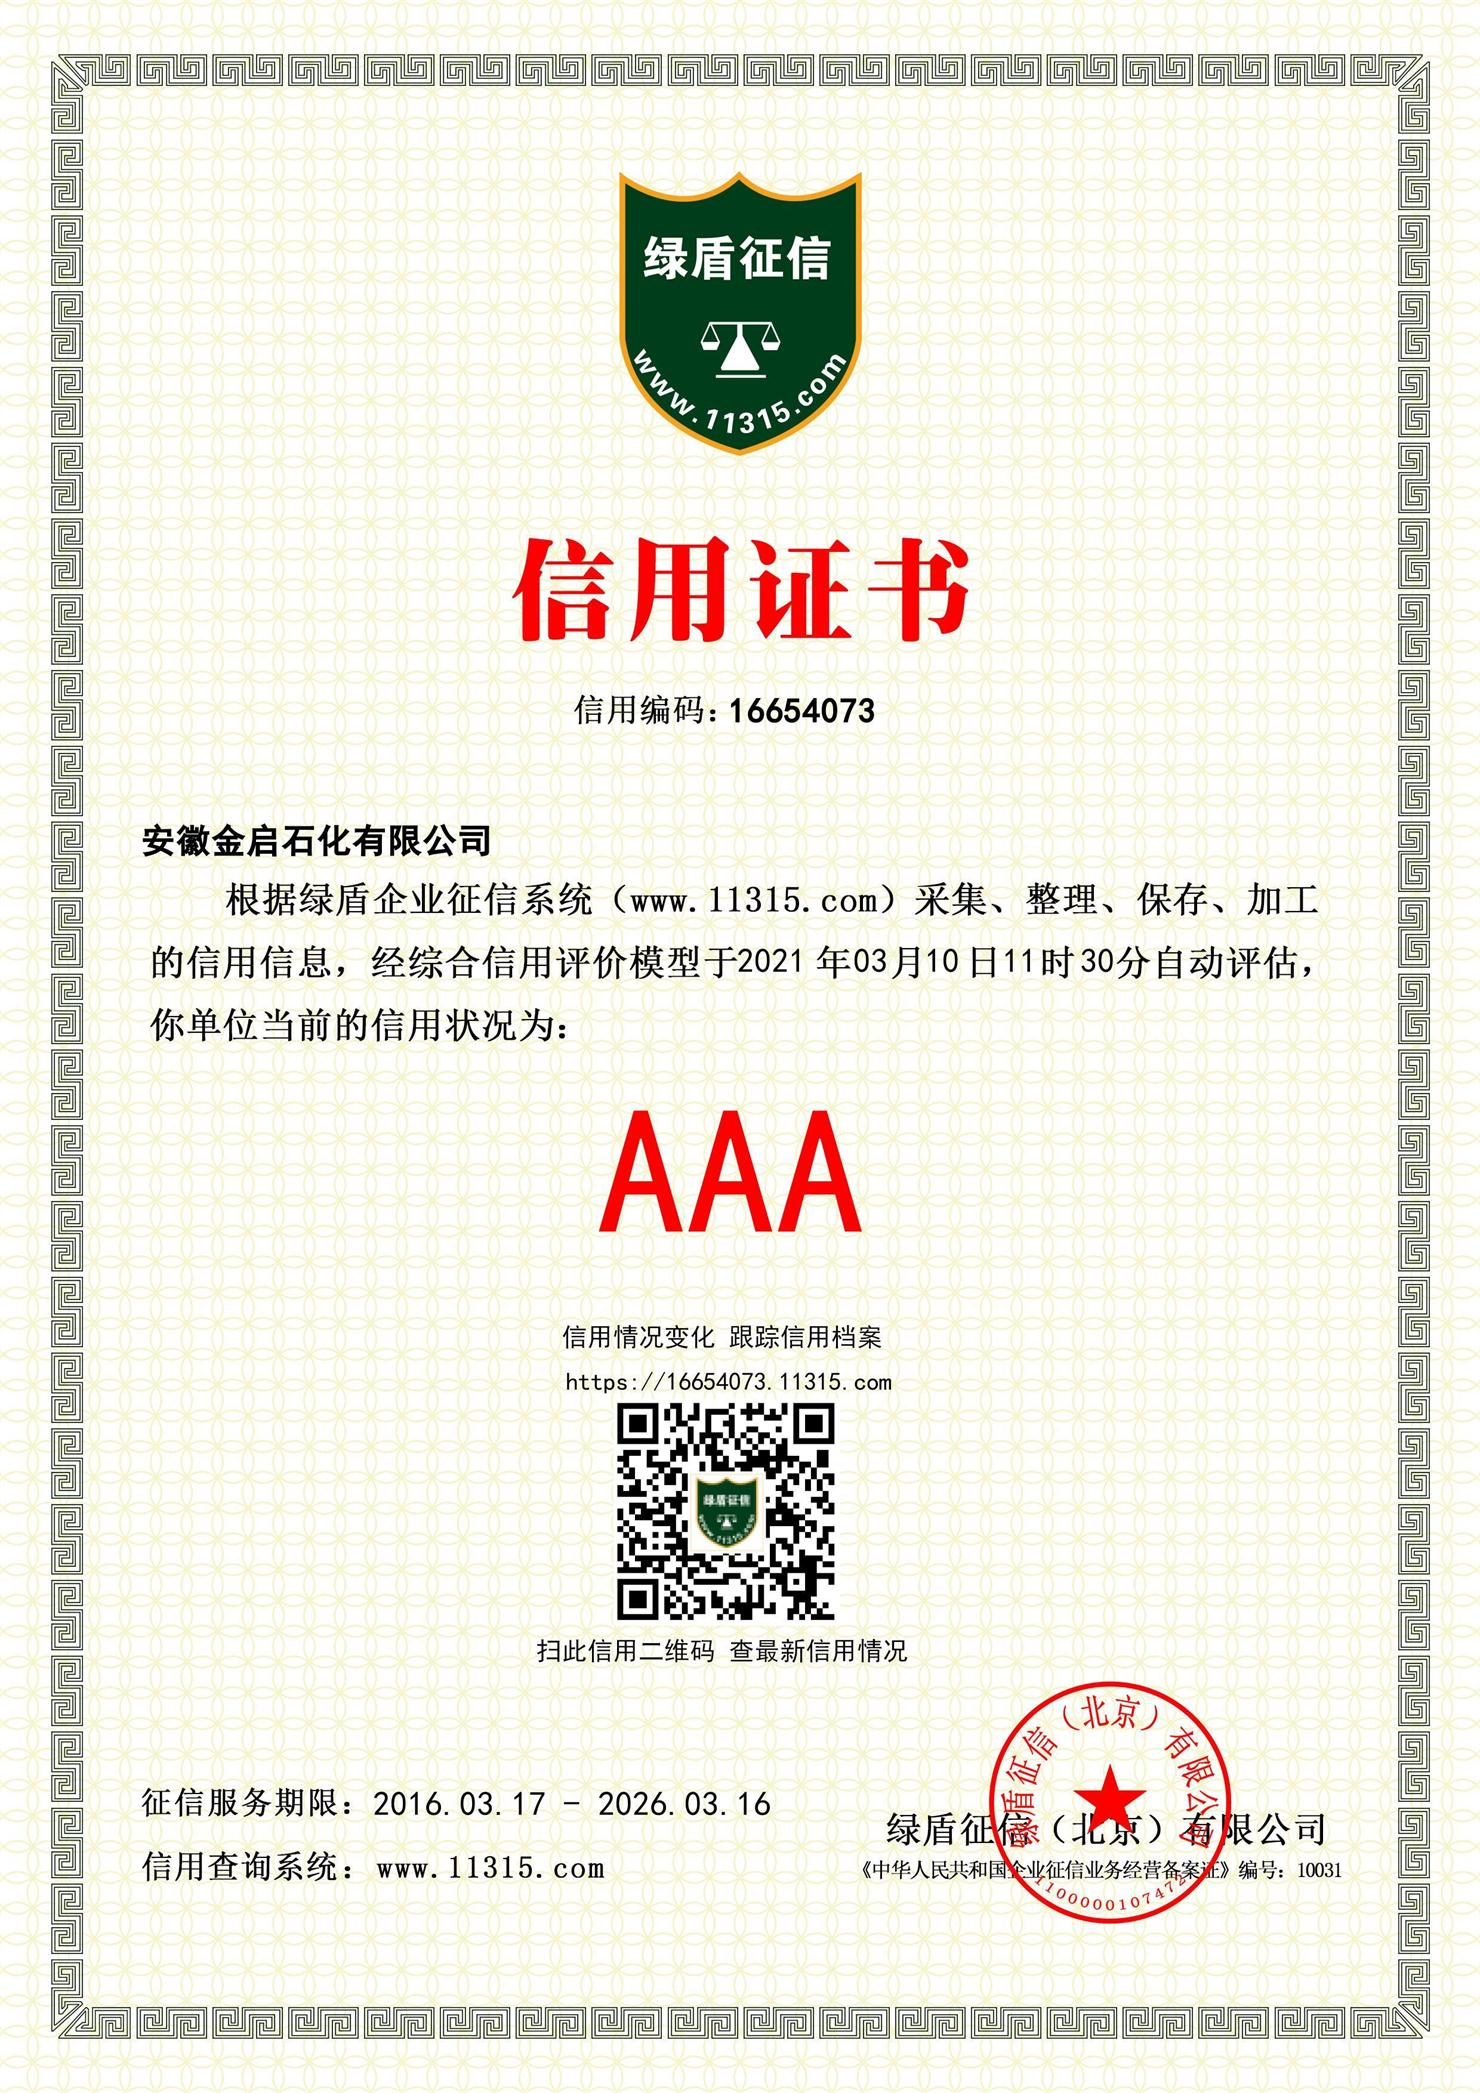 企业AAA证书